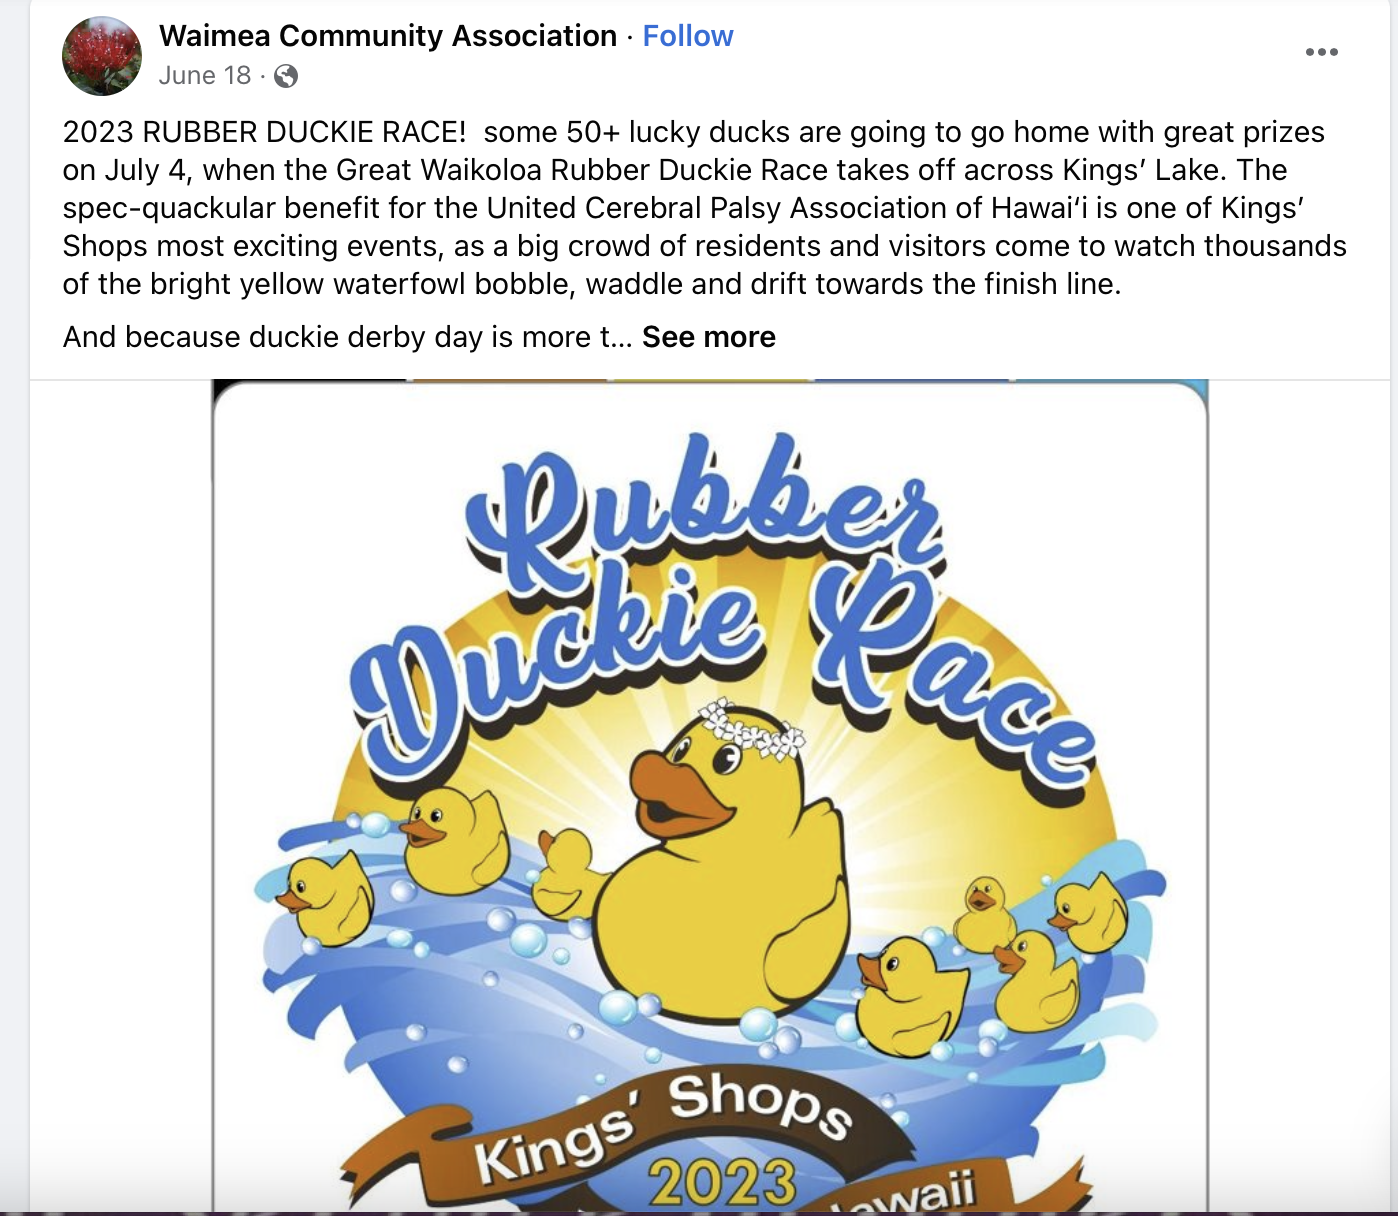 Rubber duckie race fundraiser for the Waimea Community Association